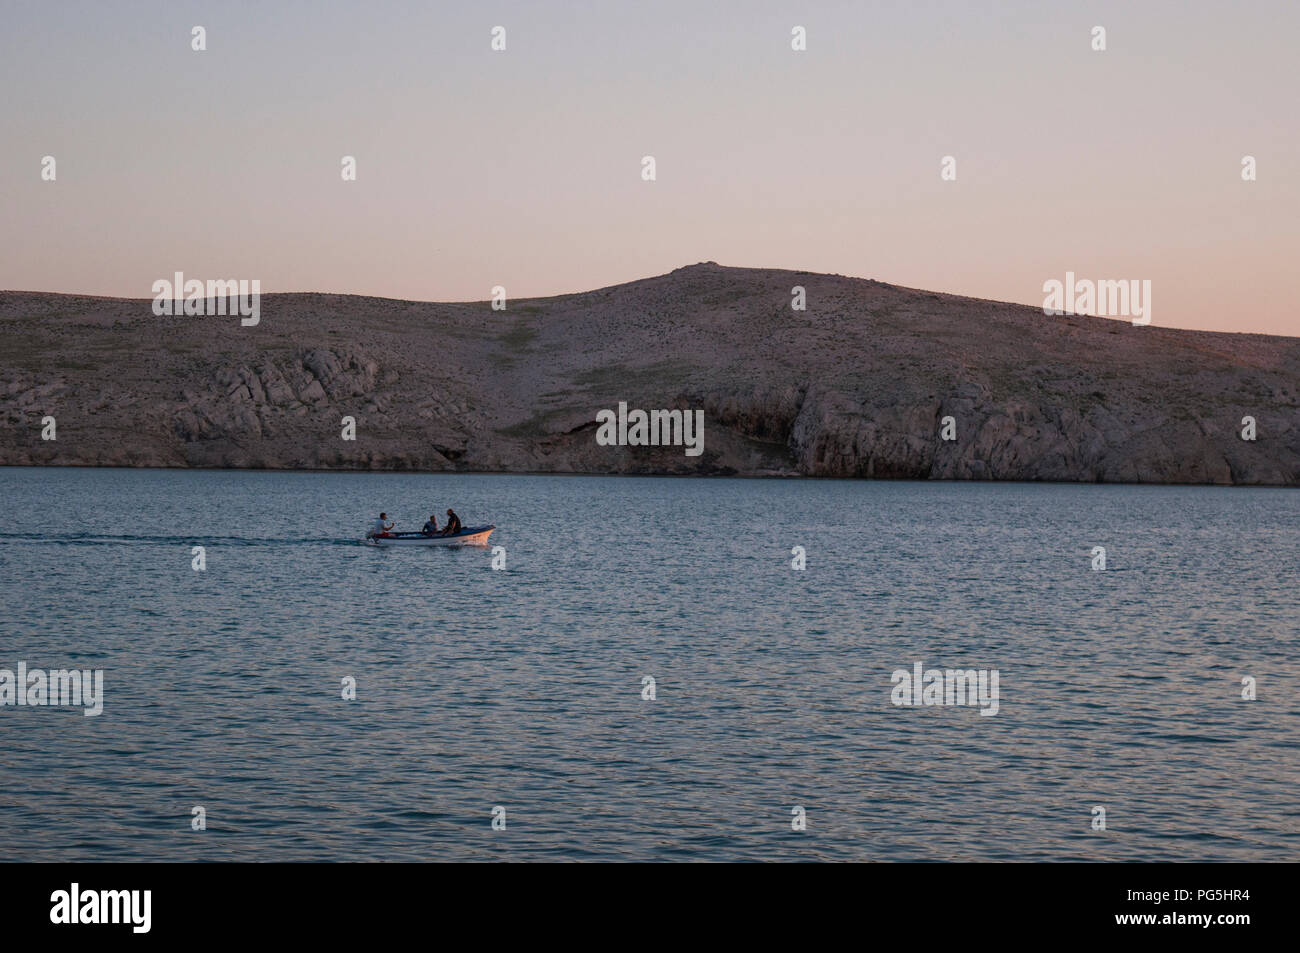 Kroatien, Europa: ishermen auf einem Schiff bei Sonnenuntergang auf der Insel Pag, die fünftgrößte Insel der Kroatischen Küste in der nördlichen Adria Stockfoto